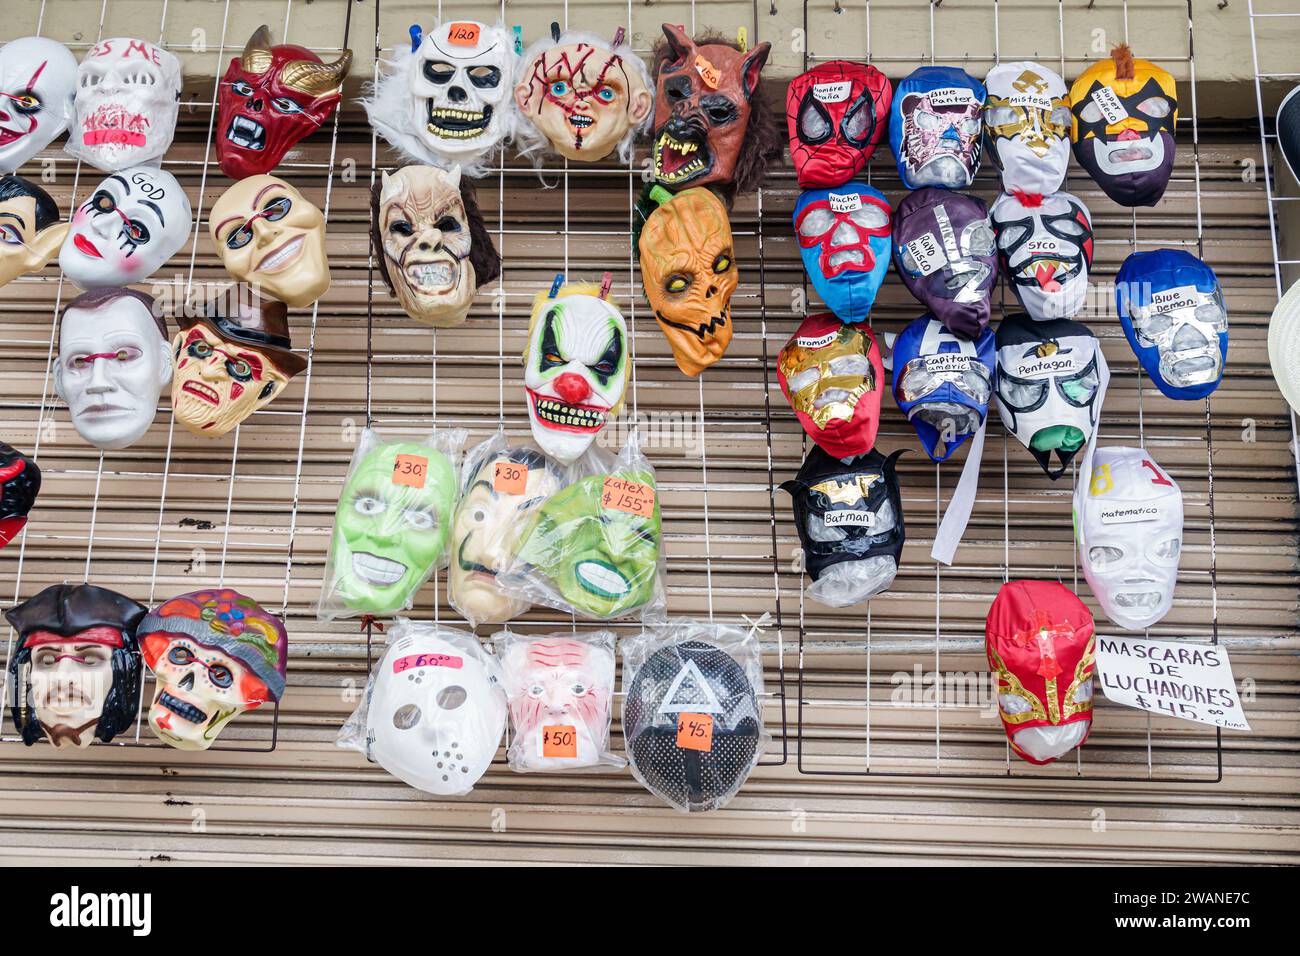 Mérida México, centro historico distrito histórico central, máscaras de Halloween luchadores lucha libre, tienda de negocios mercado de mercado de comercio, venta Foto de stock